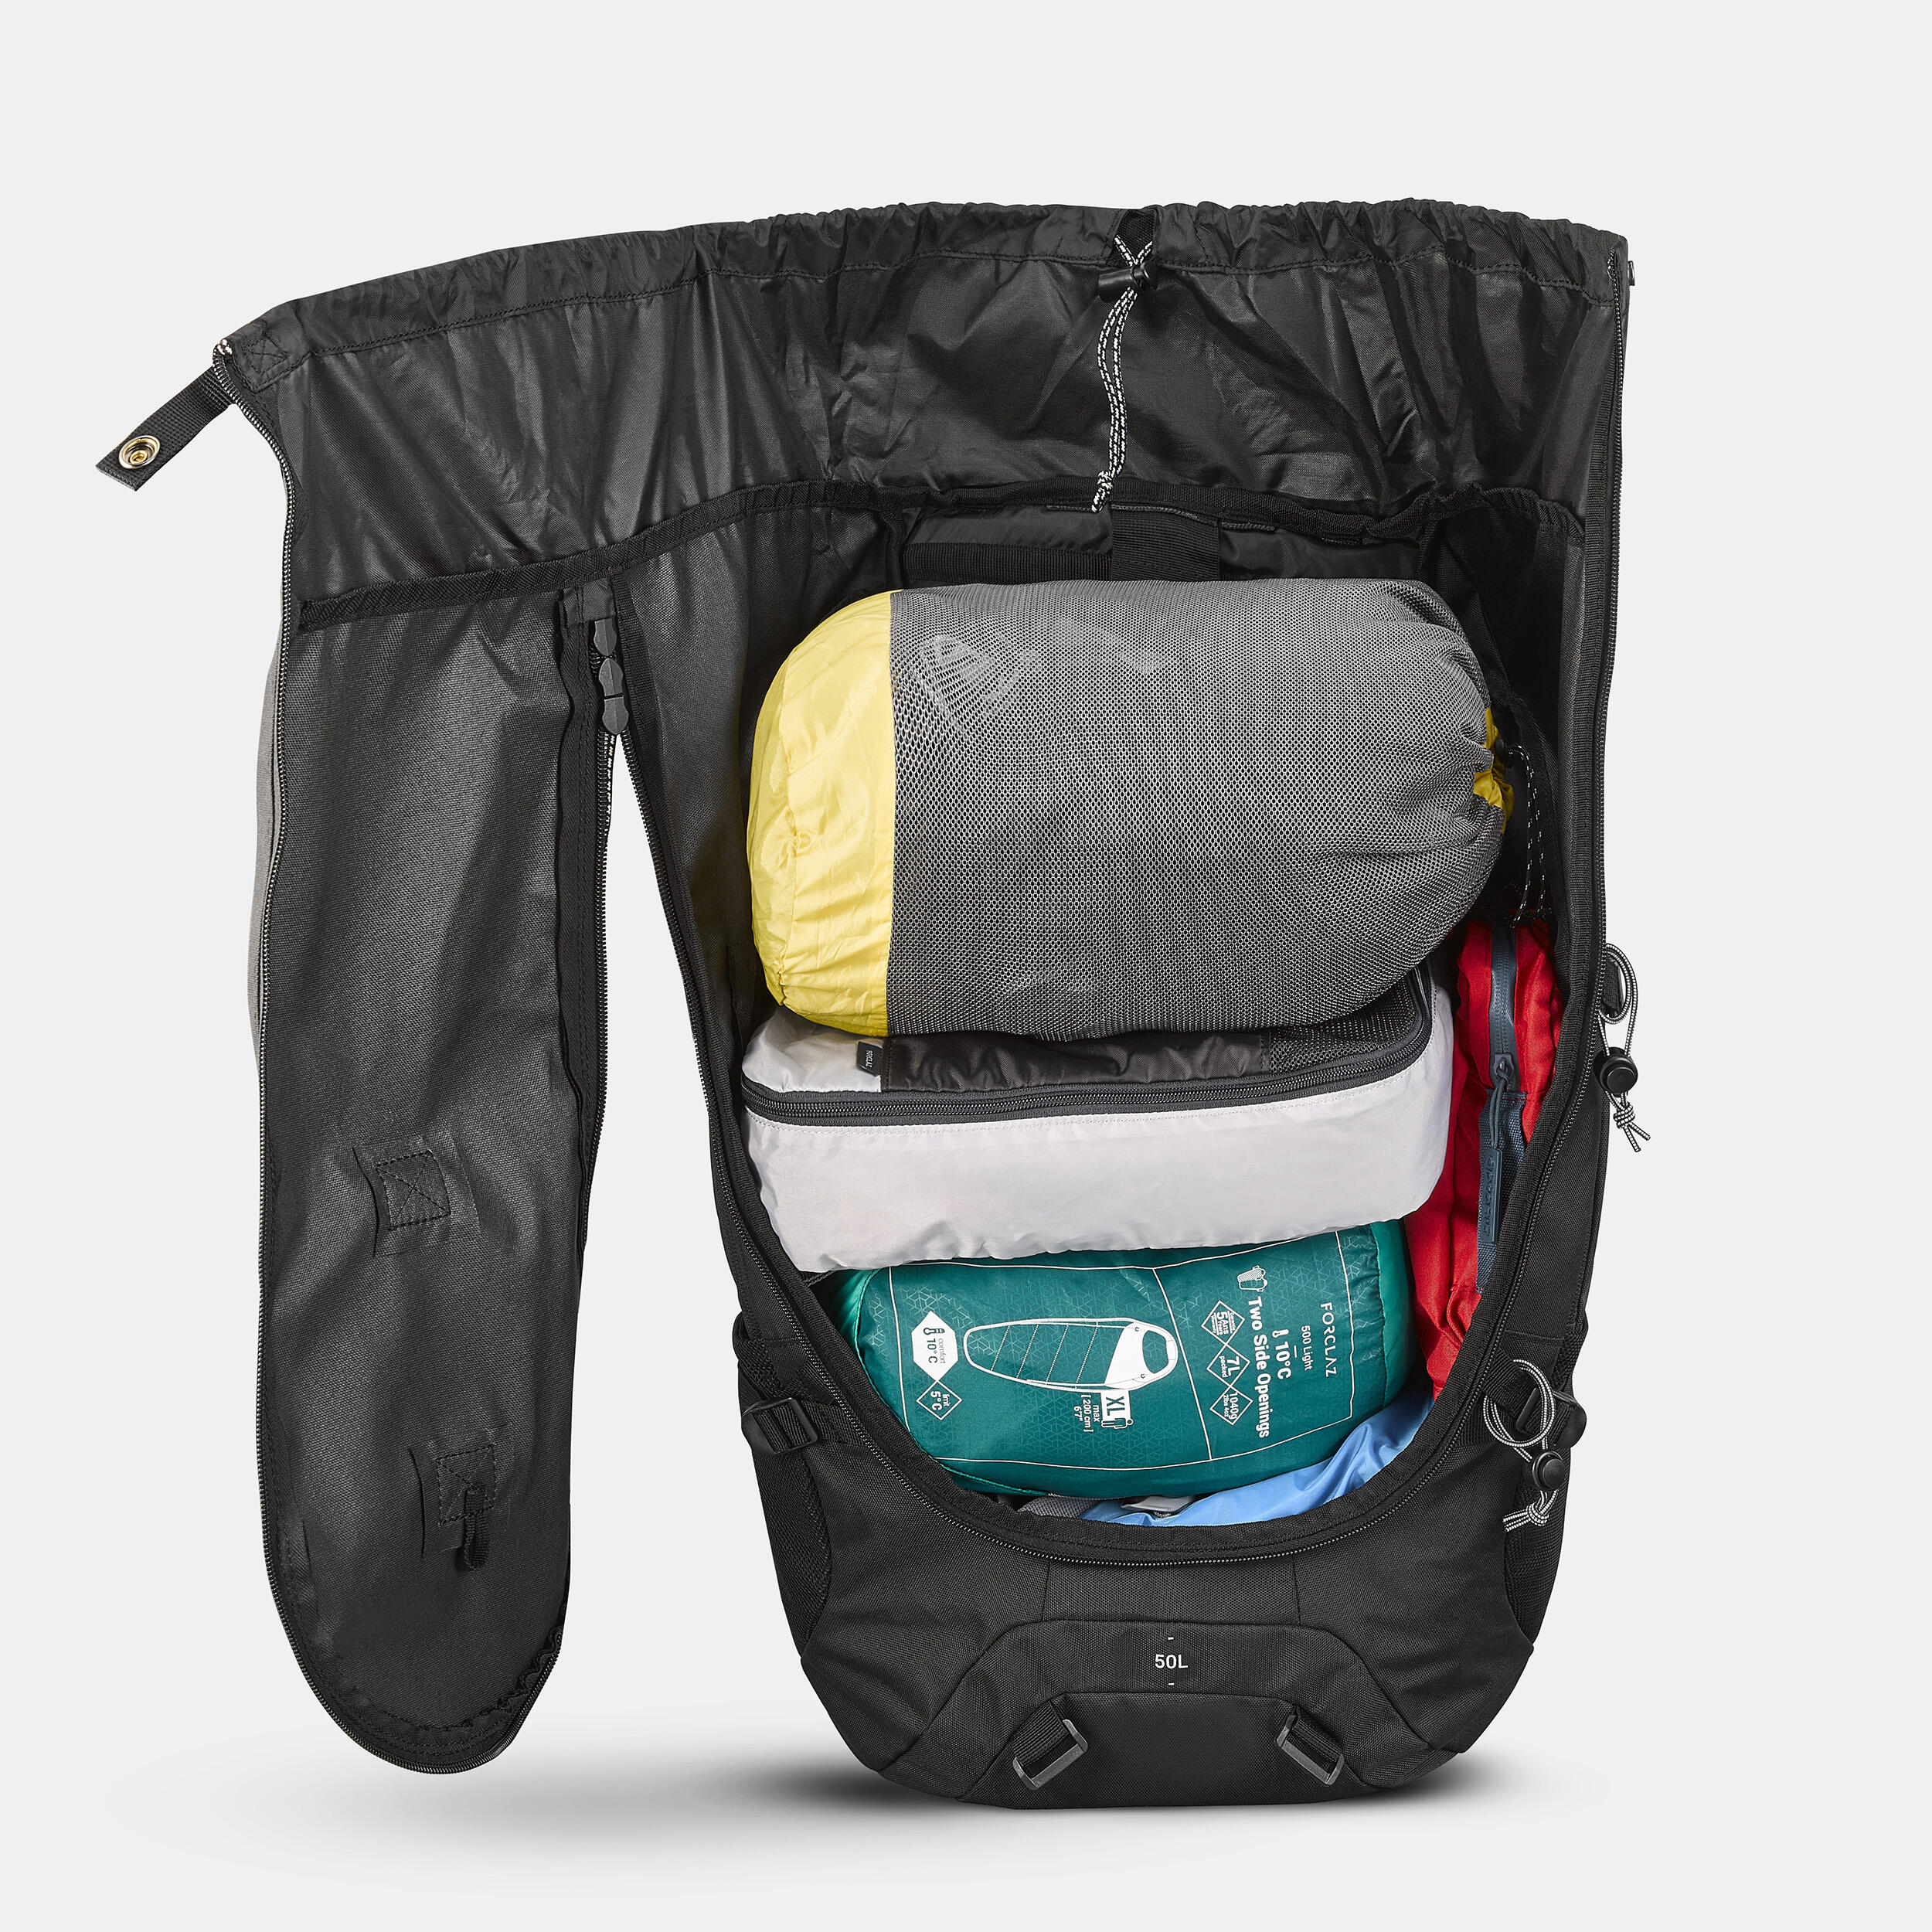 Hiking Backpack 50 L - Travel 100 Black - FORCLAZ